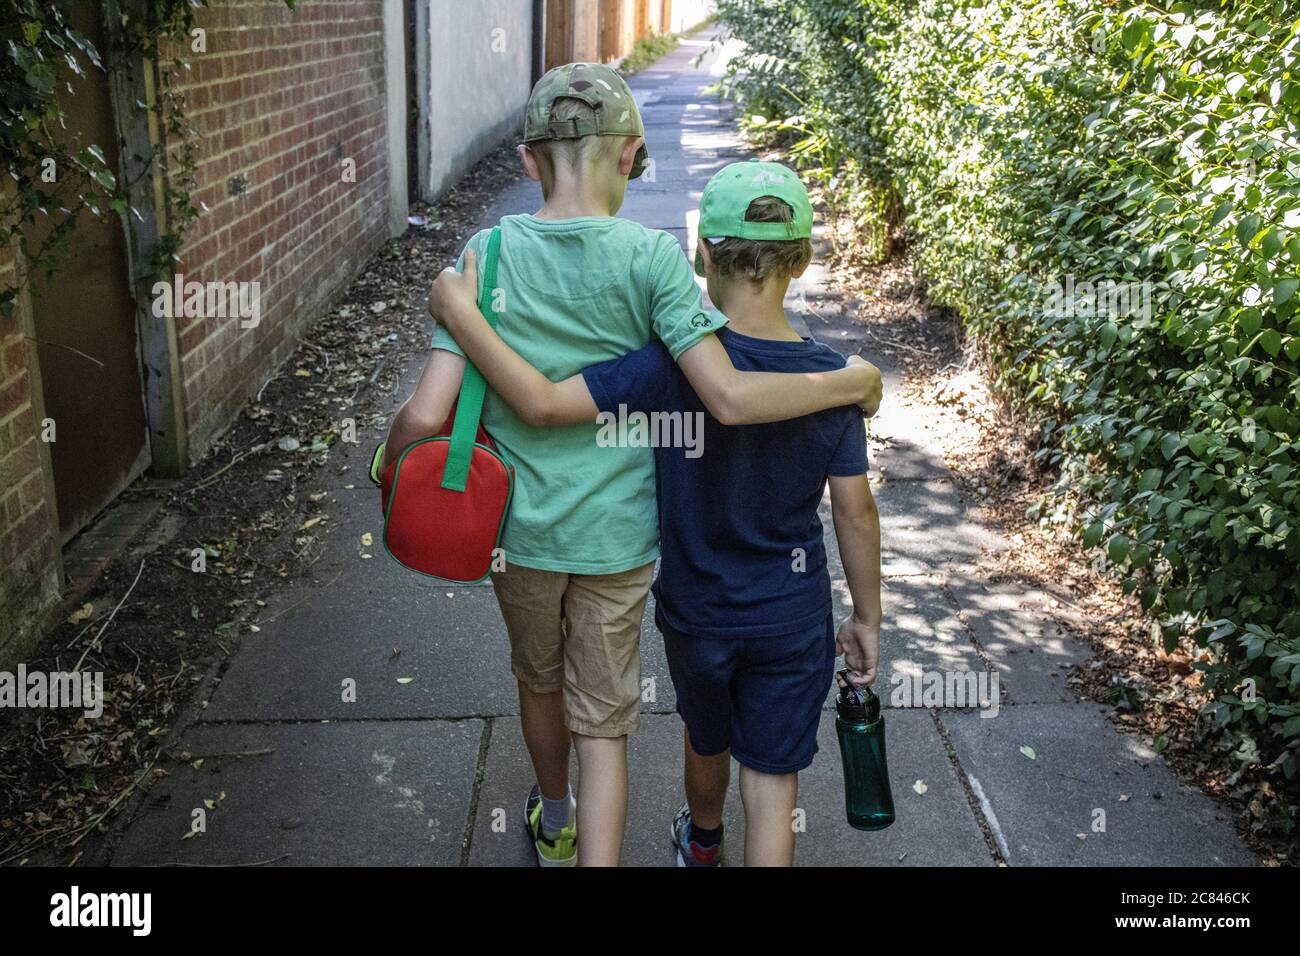 Amour fraternel, deux jeunes frères marchant ensemble, bras autour des épaules, Londres, Angleterre, Royaume-Uni Banque D'Images